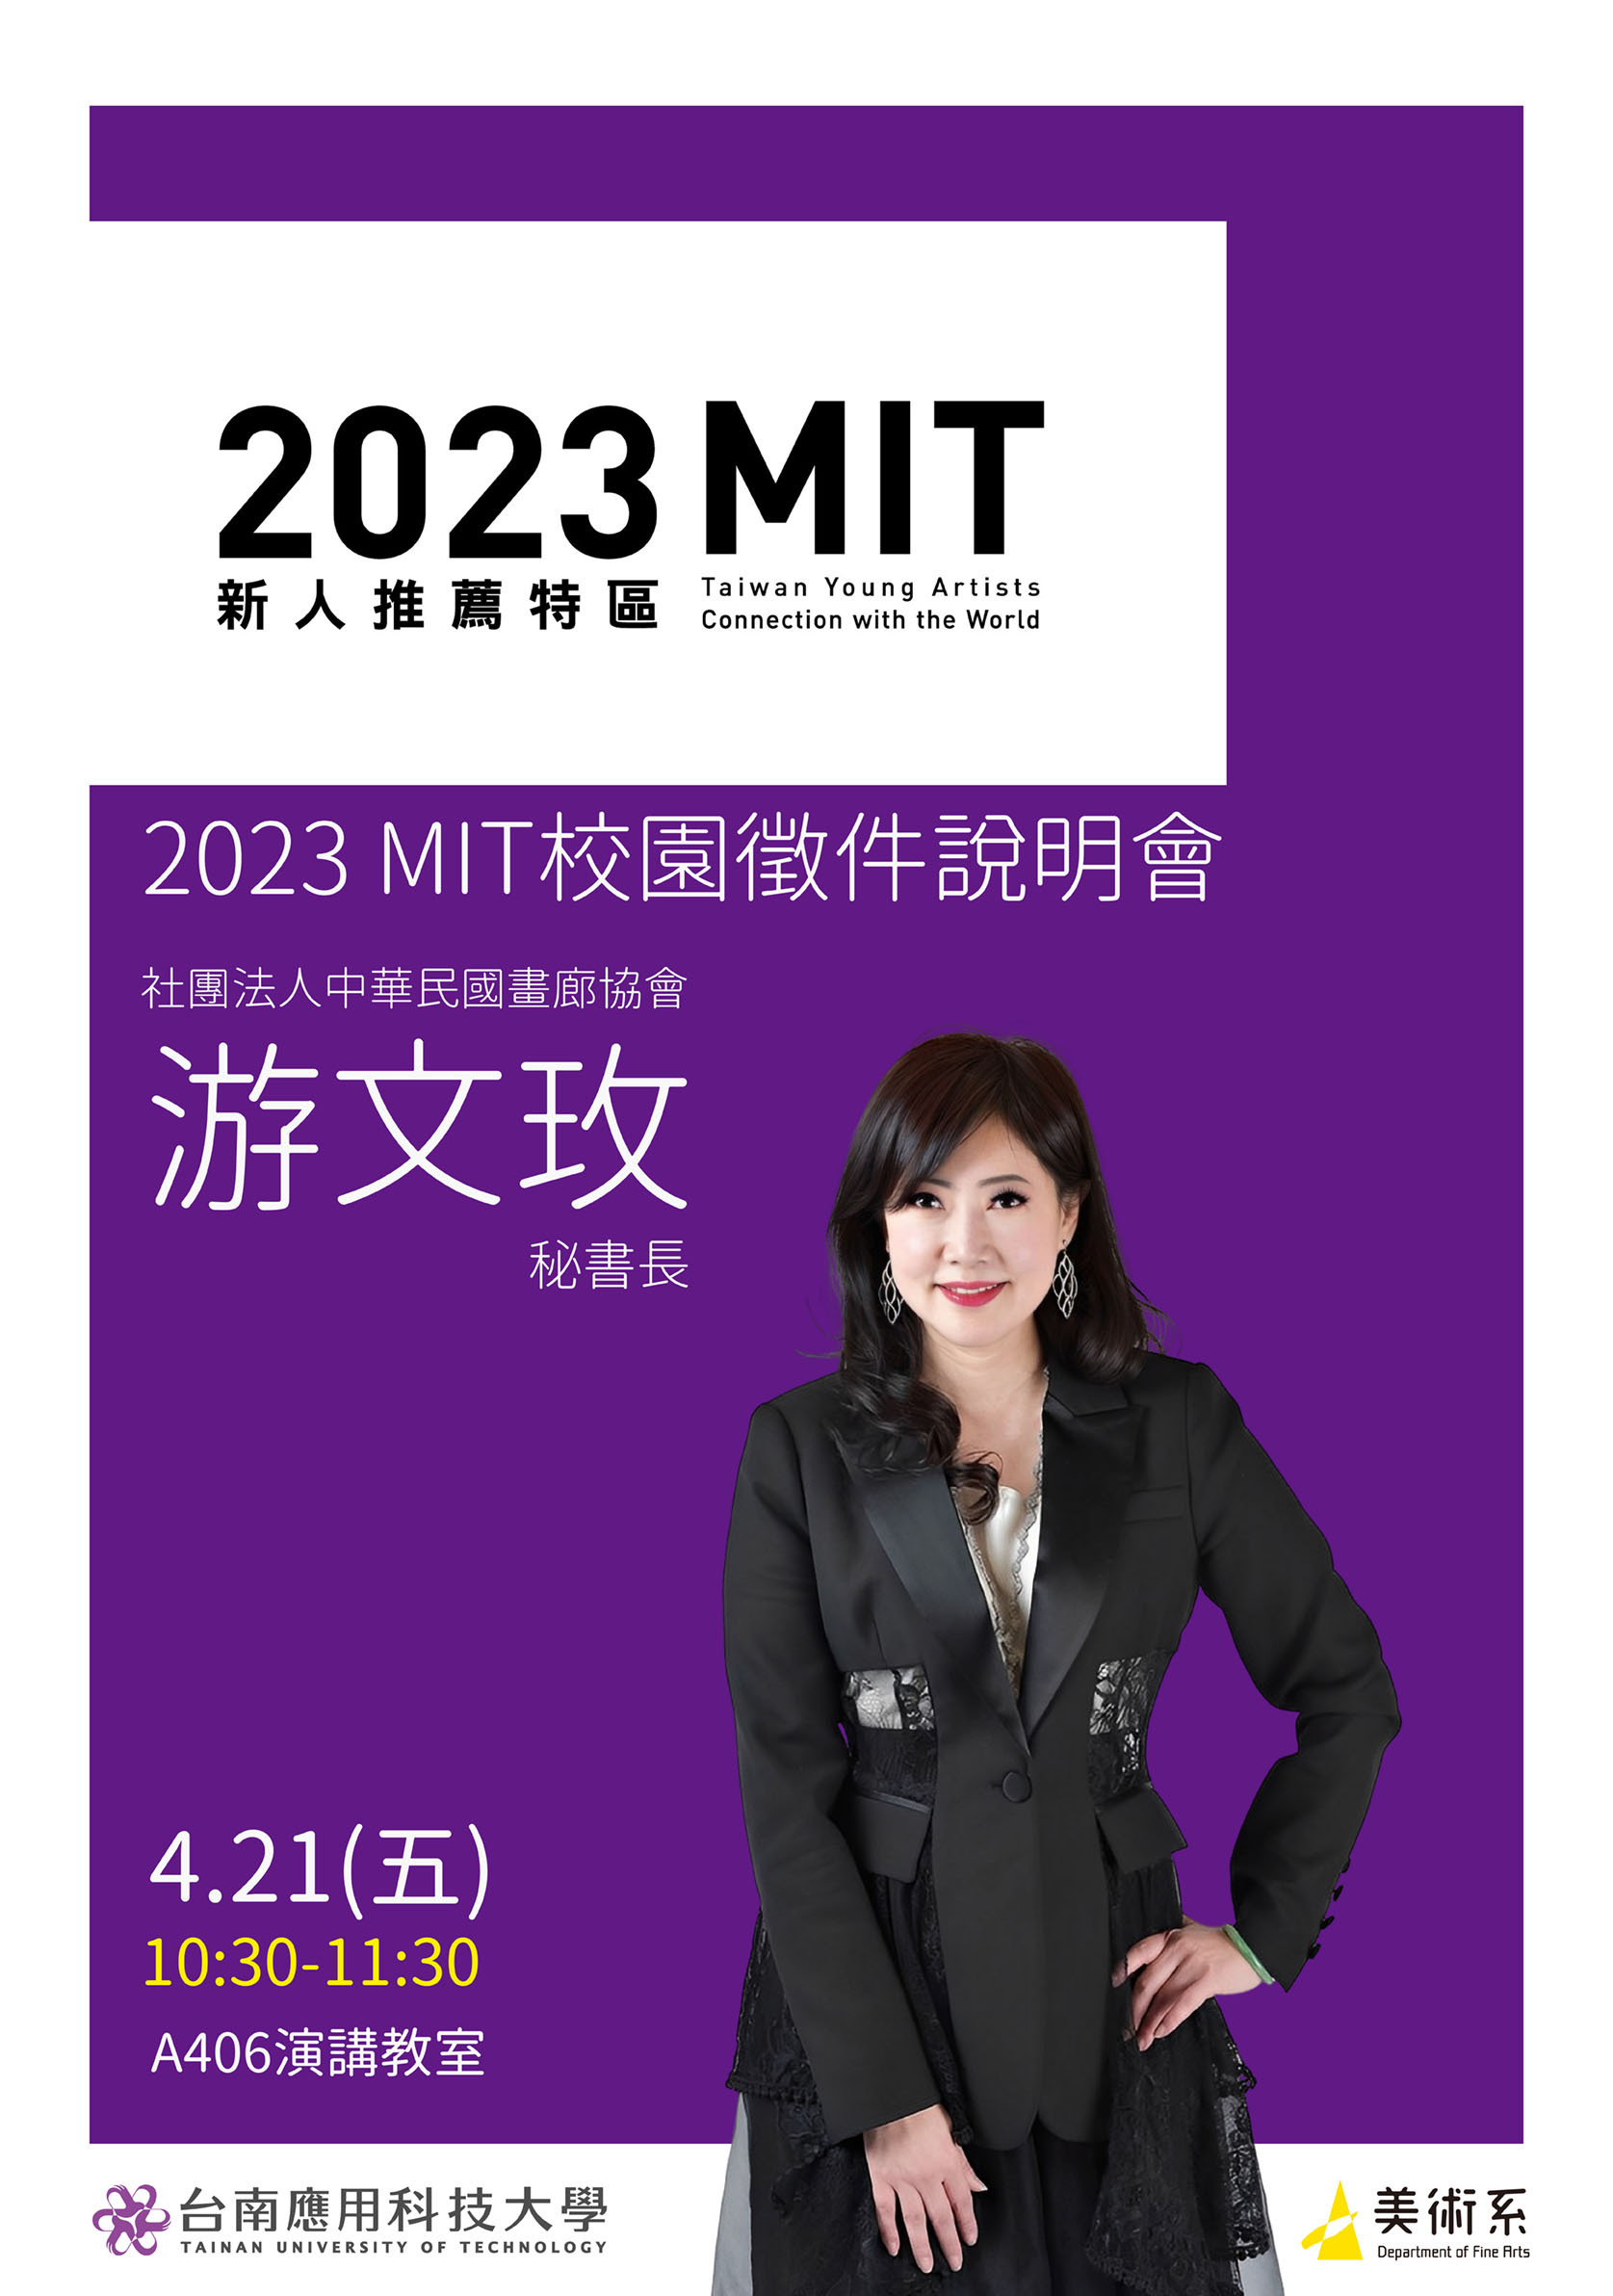 2023 MIT校園徵件說明會